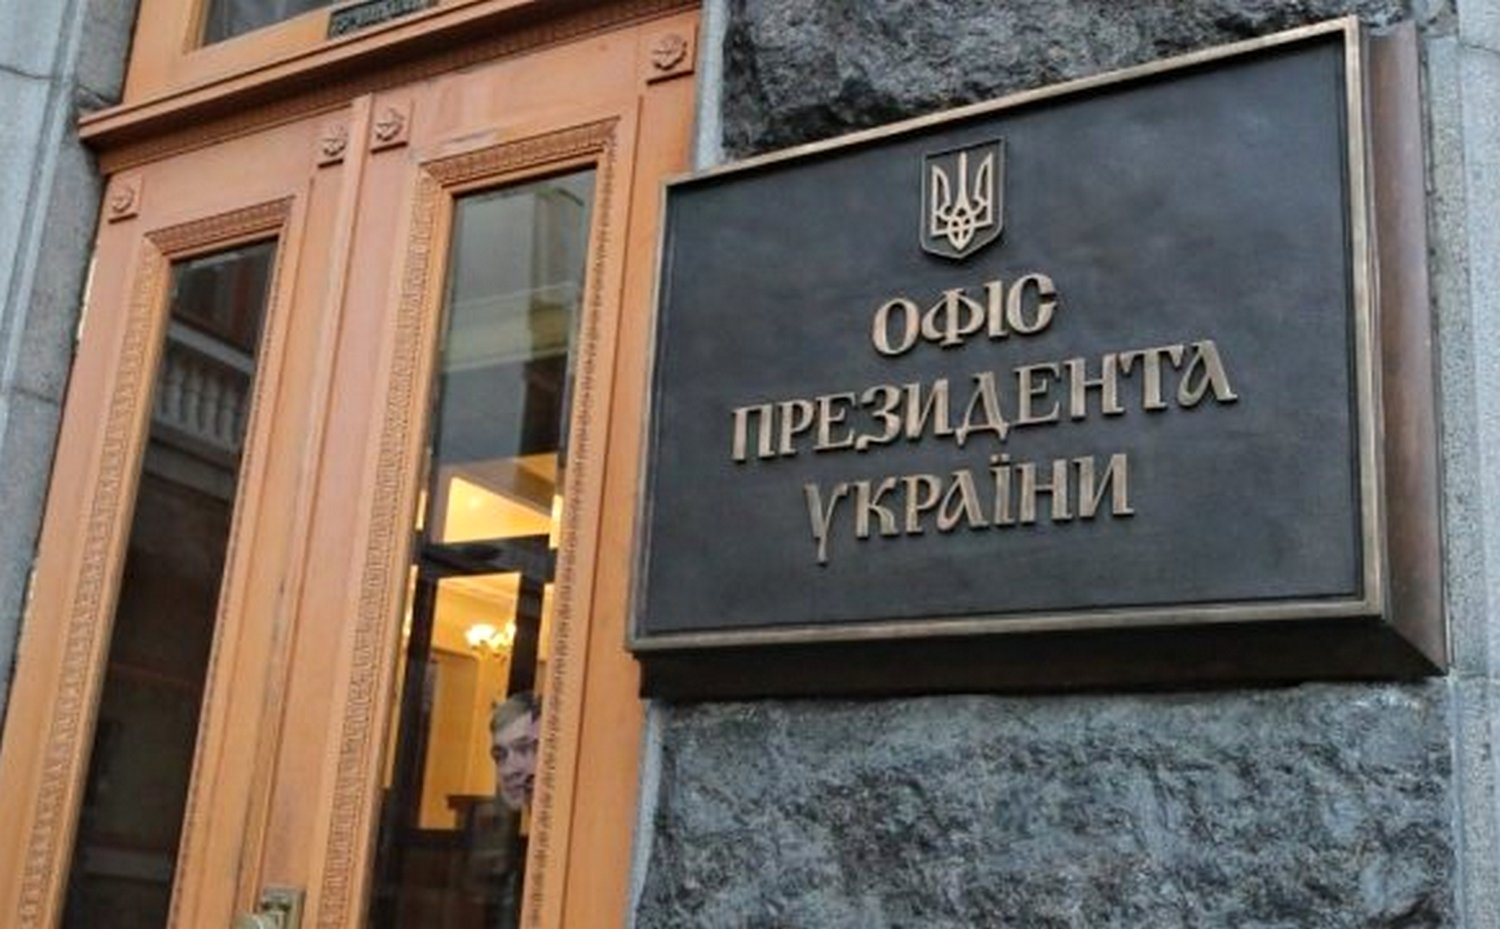 Офіс президента України.